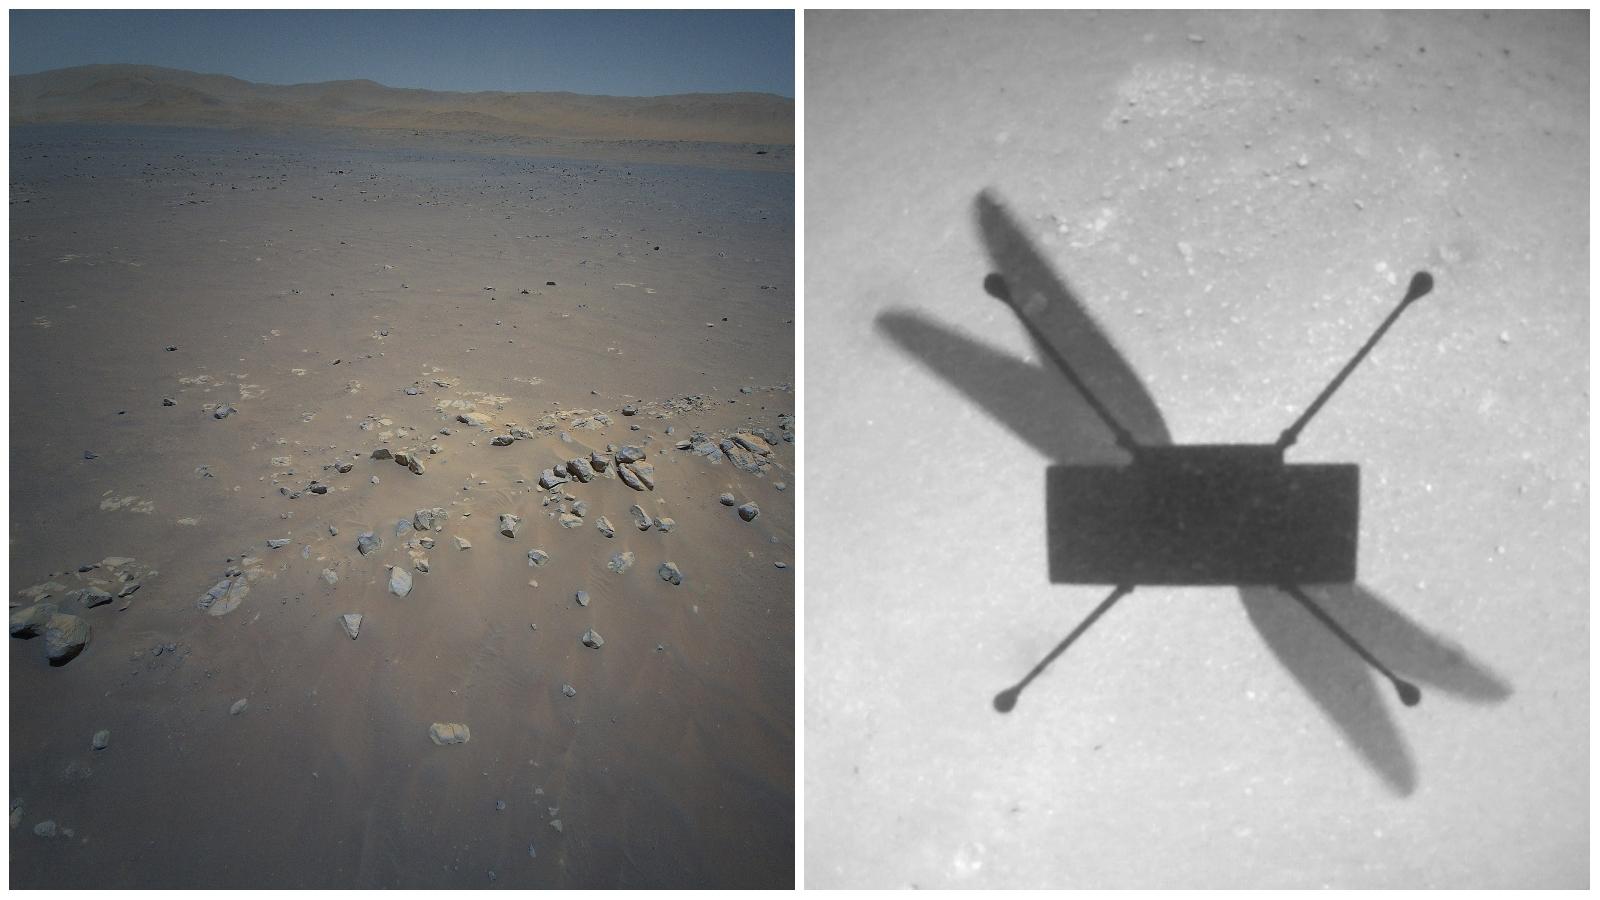 L'hélicoptère Ingenuity a pris l'image de droite avec sa caméra de navigation et l'image de gauche avec sa caméra couleur lors de son dixième vol. Planète Mars, le 24 juillet 2021. [NASA - JPL-Caltech]